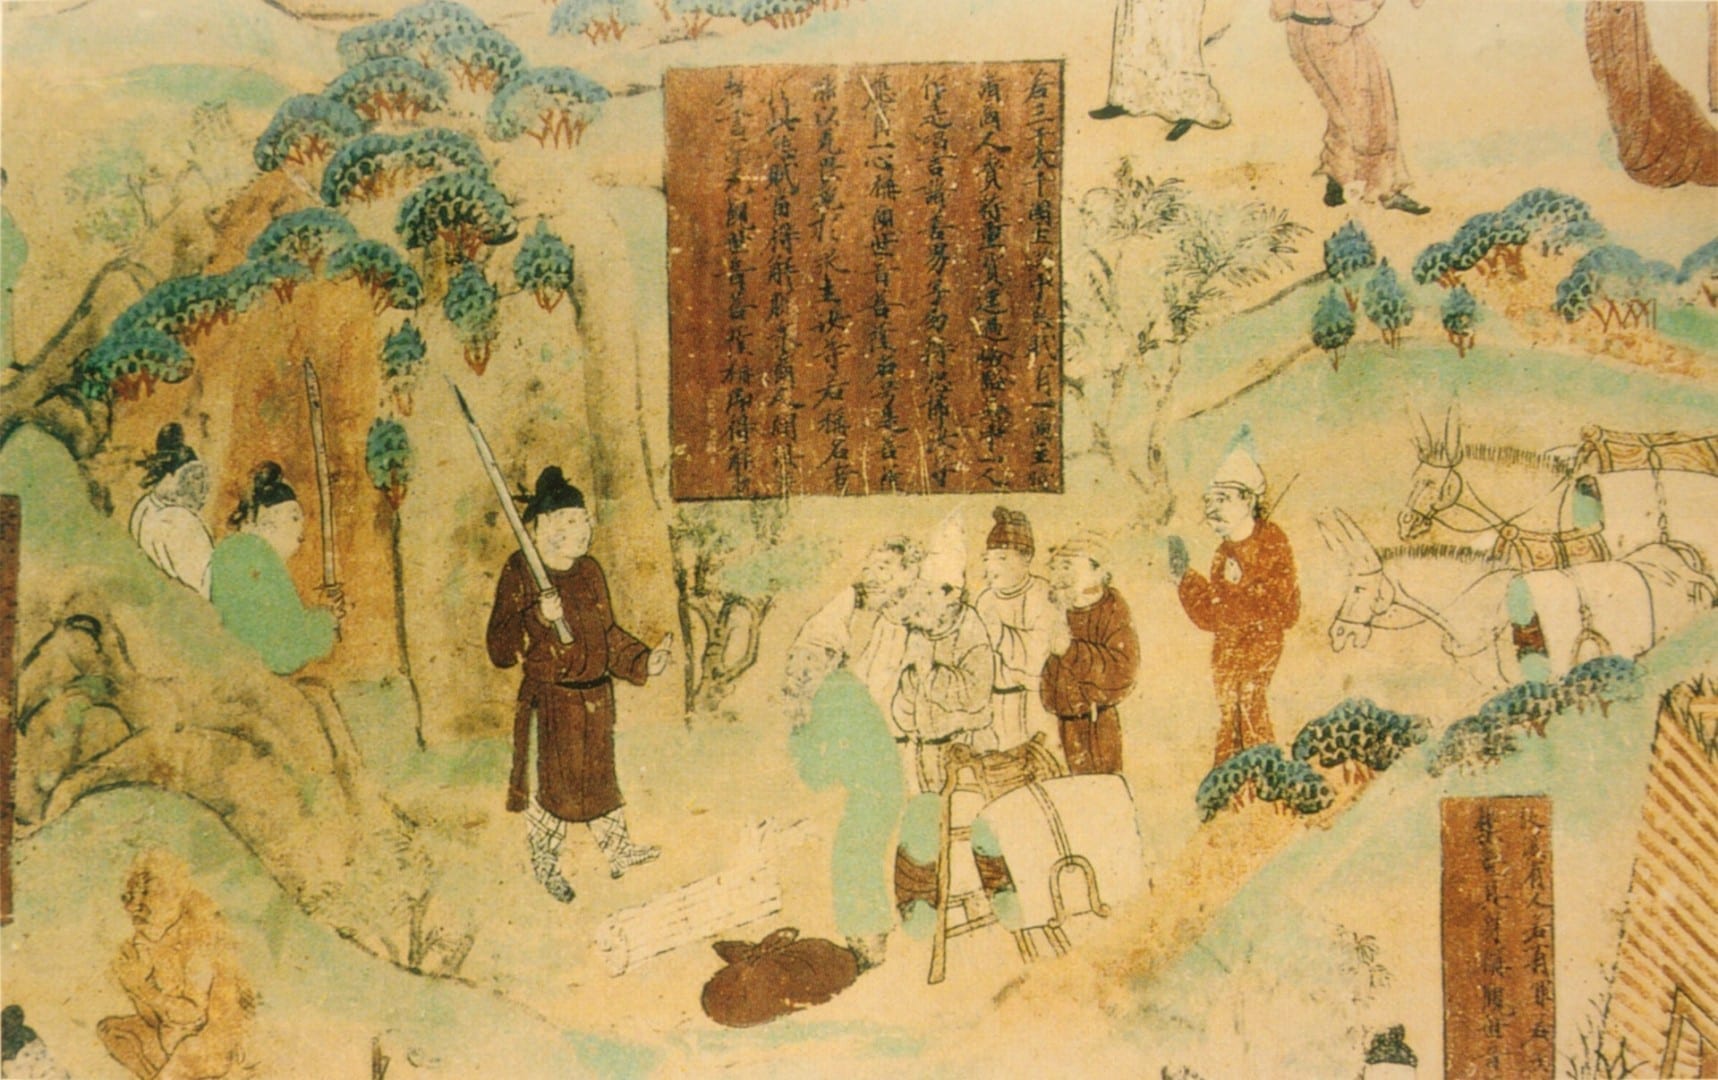 Una pintura de los comerciantes de la Dinastía Tang, las Cuevas de los Mil Budas de Bezeklik Turfán China